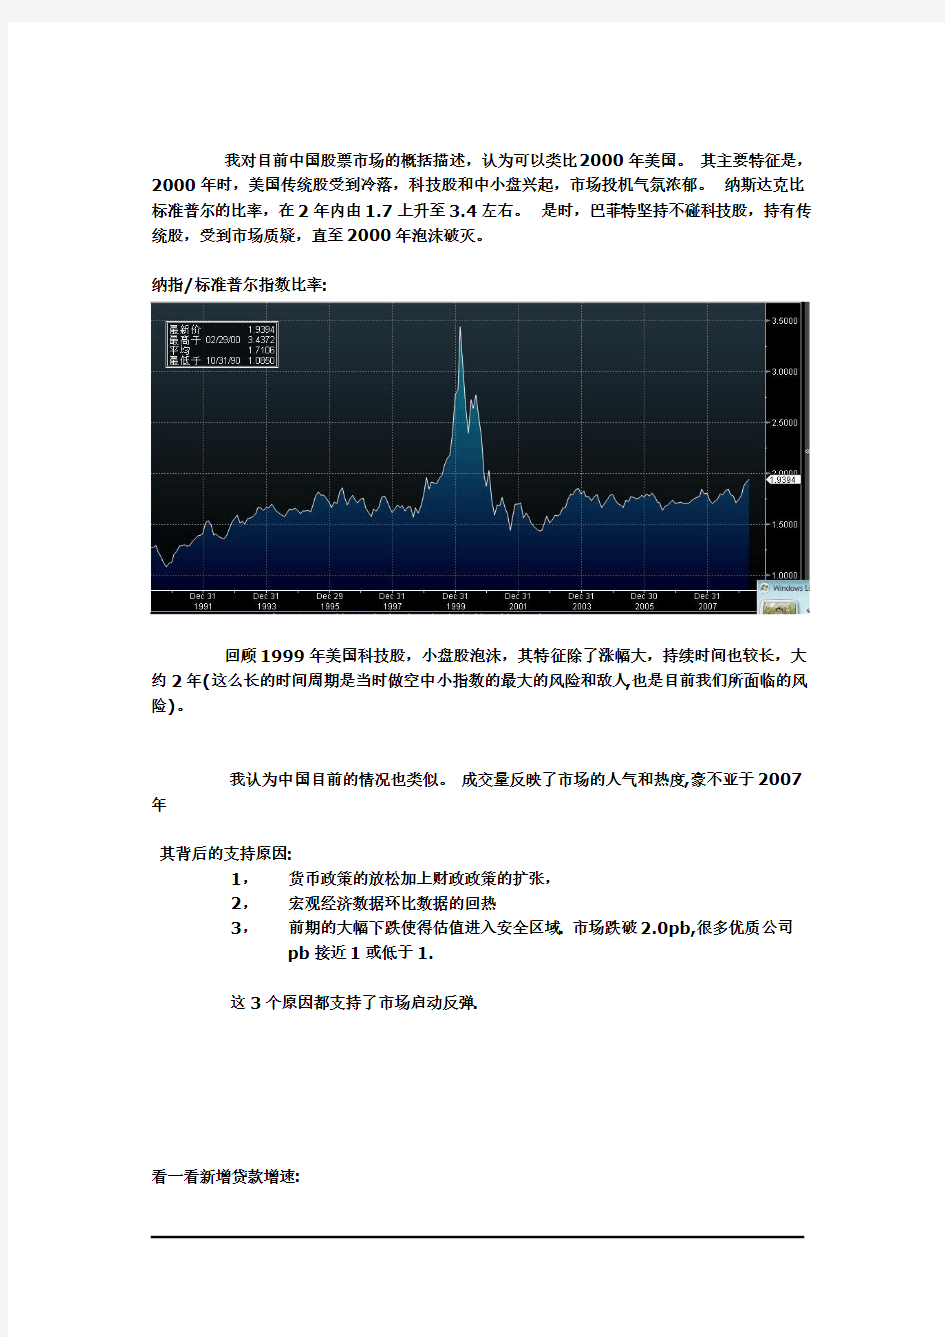 我对目前中国股票市场的概括描述